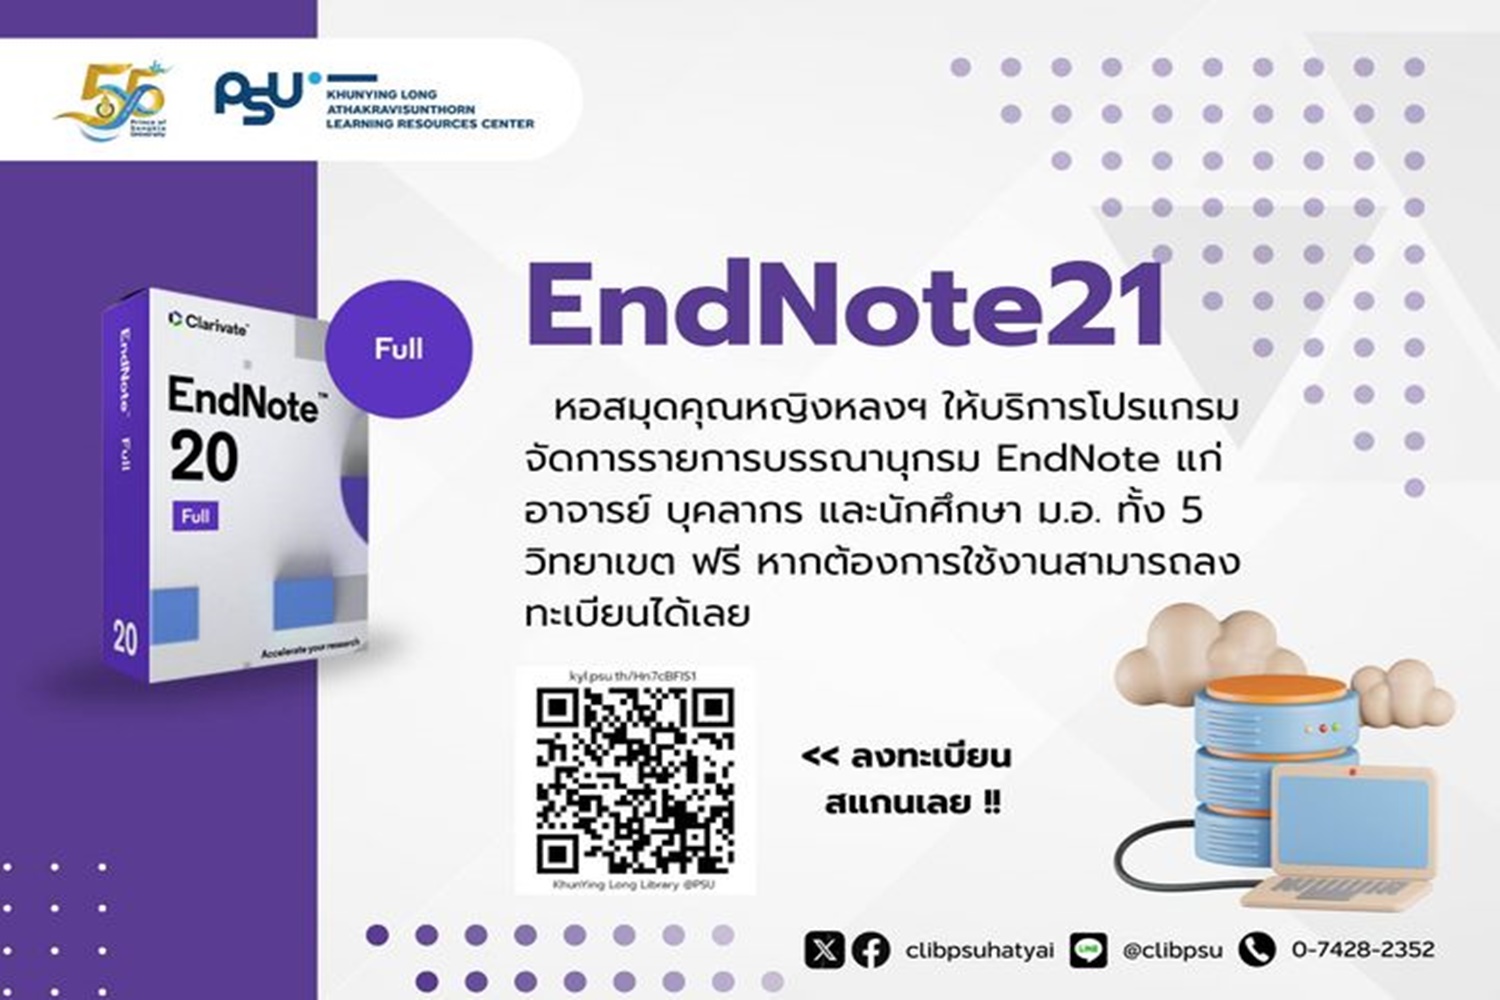 ประชาสัมพันธ์ ENDNOTE21